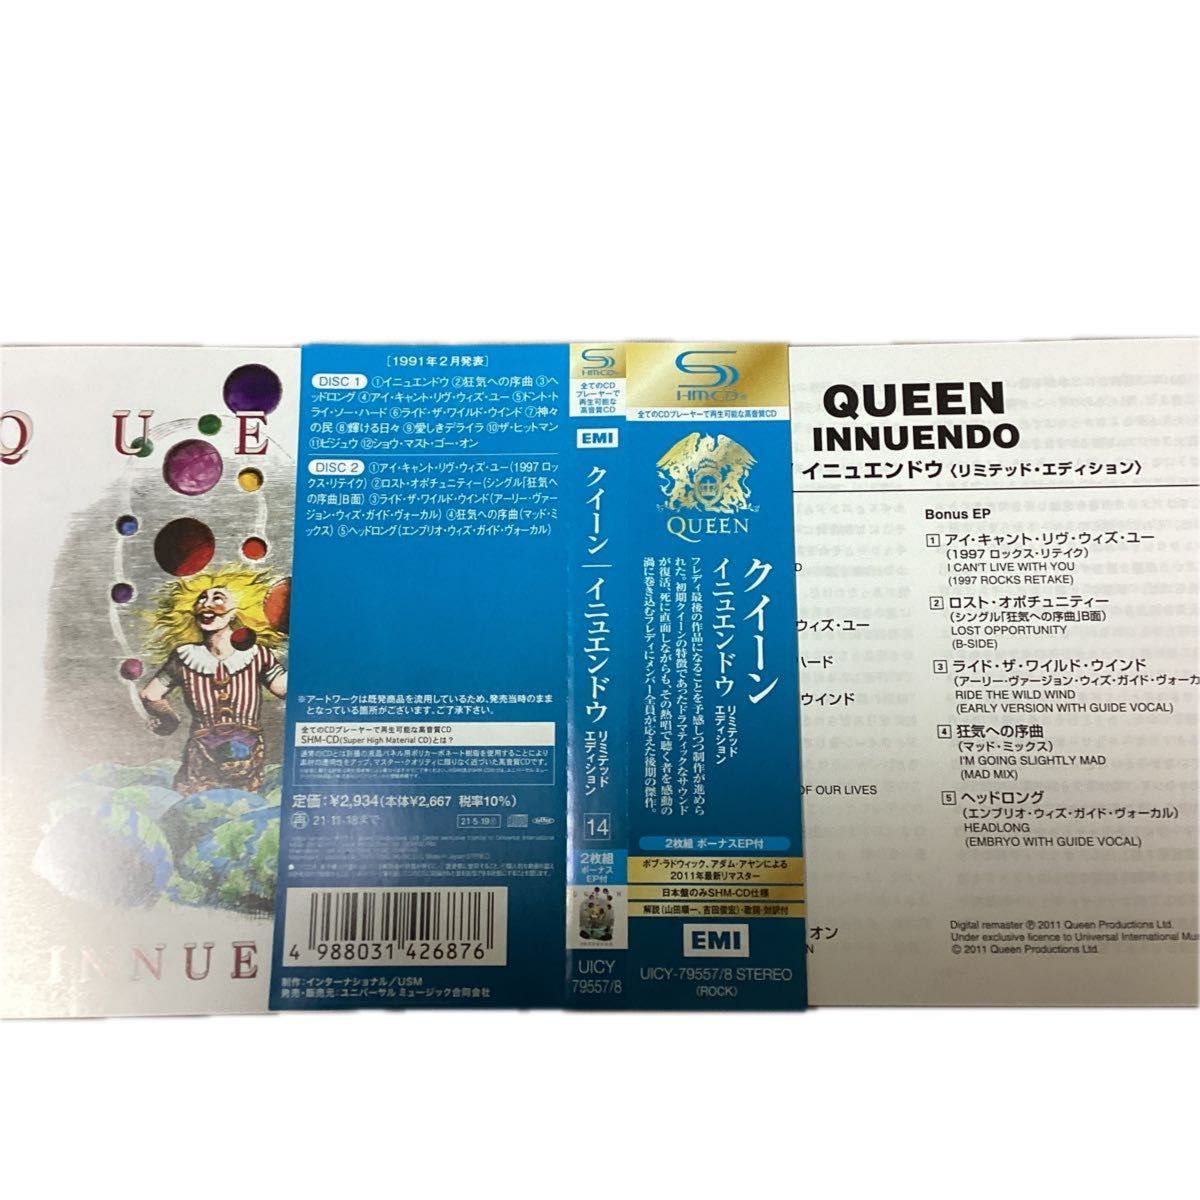 【国内盤帯付きSHM-CD2枚組】 イニュエンドウ CD クイーン queen